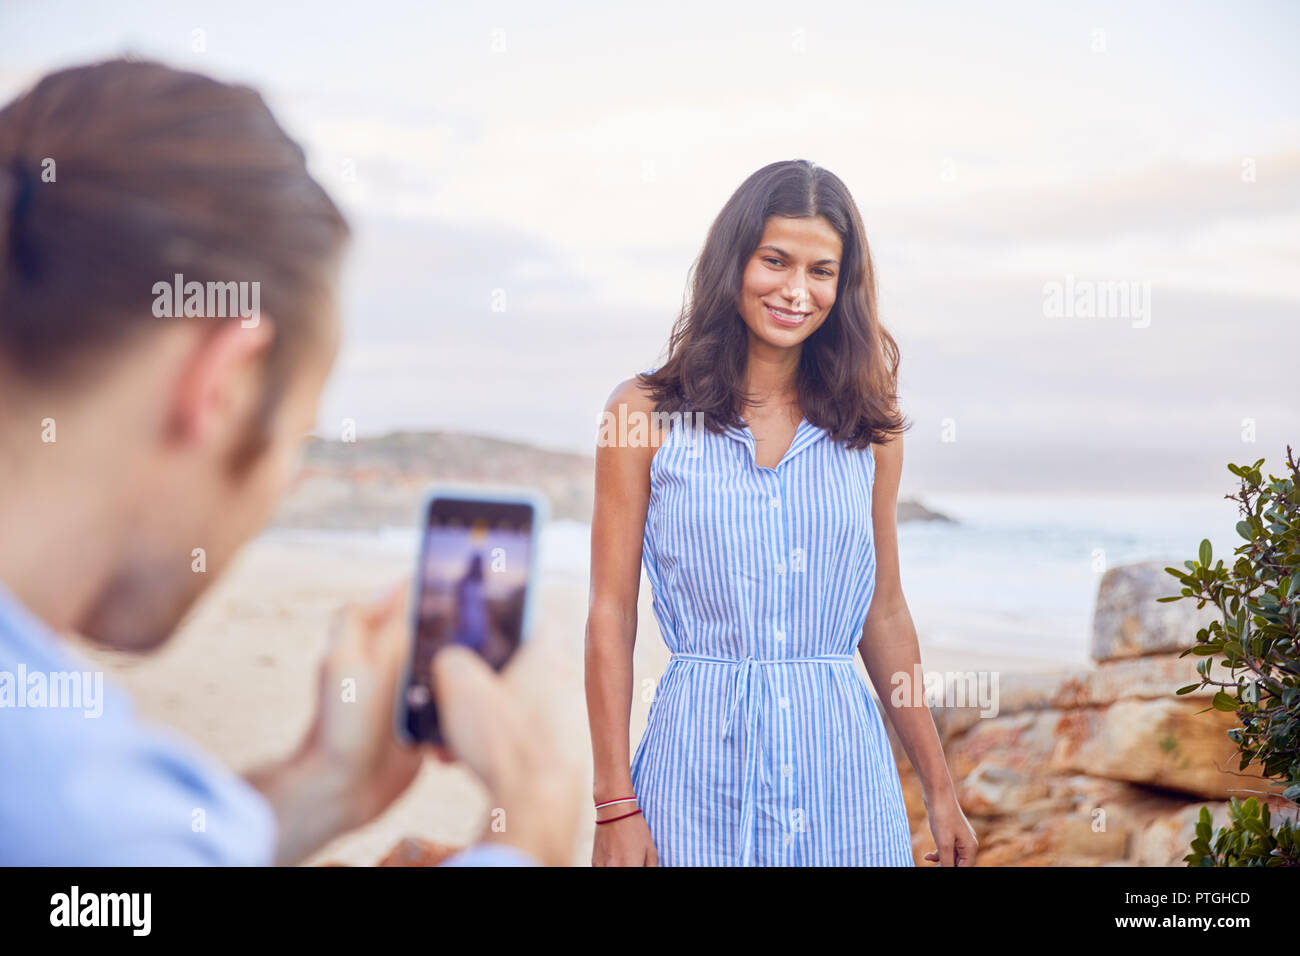 Junger Mann mit smart phone fotografieren Freundin am Strand Stockfoto